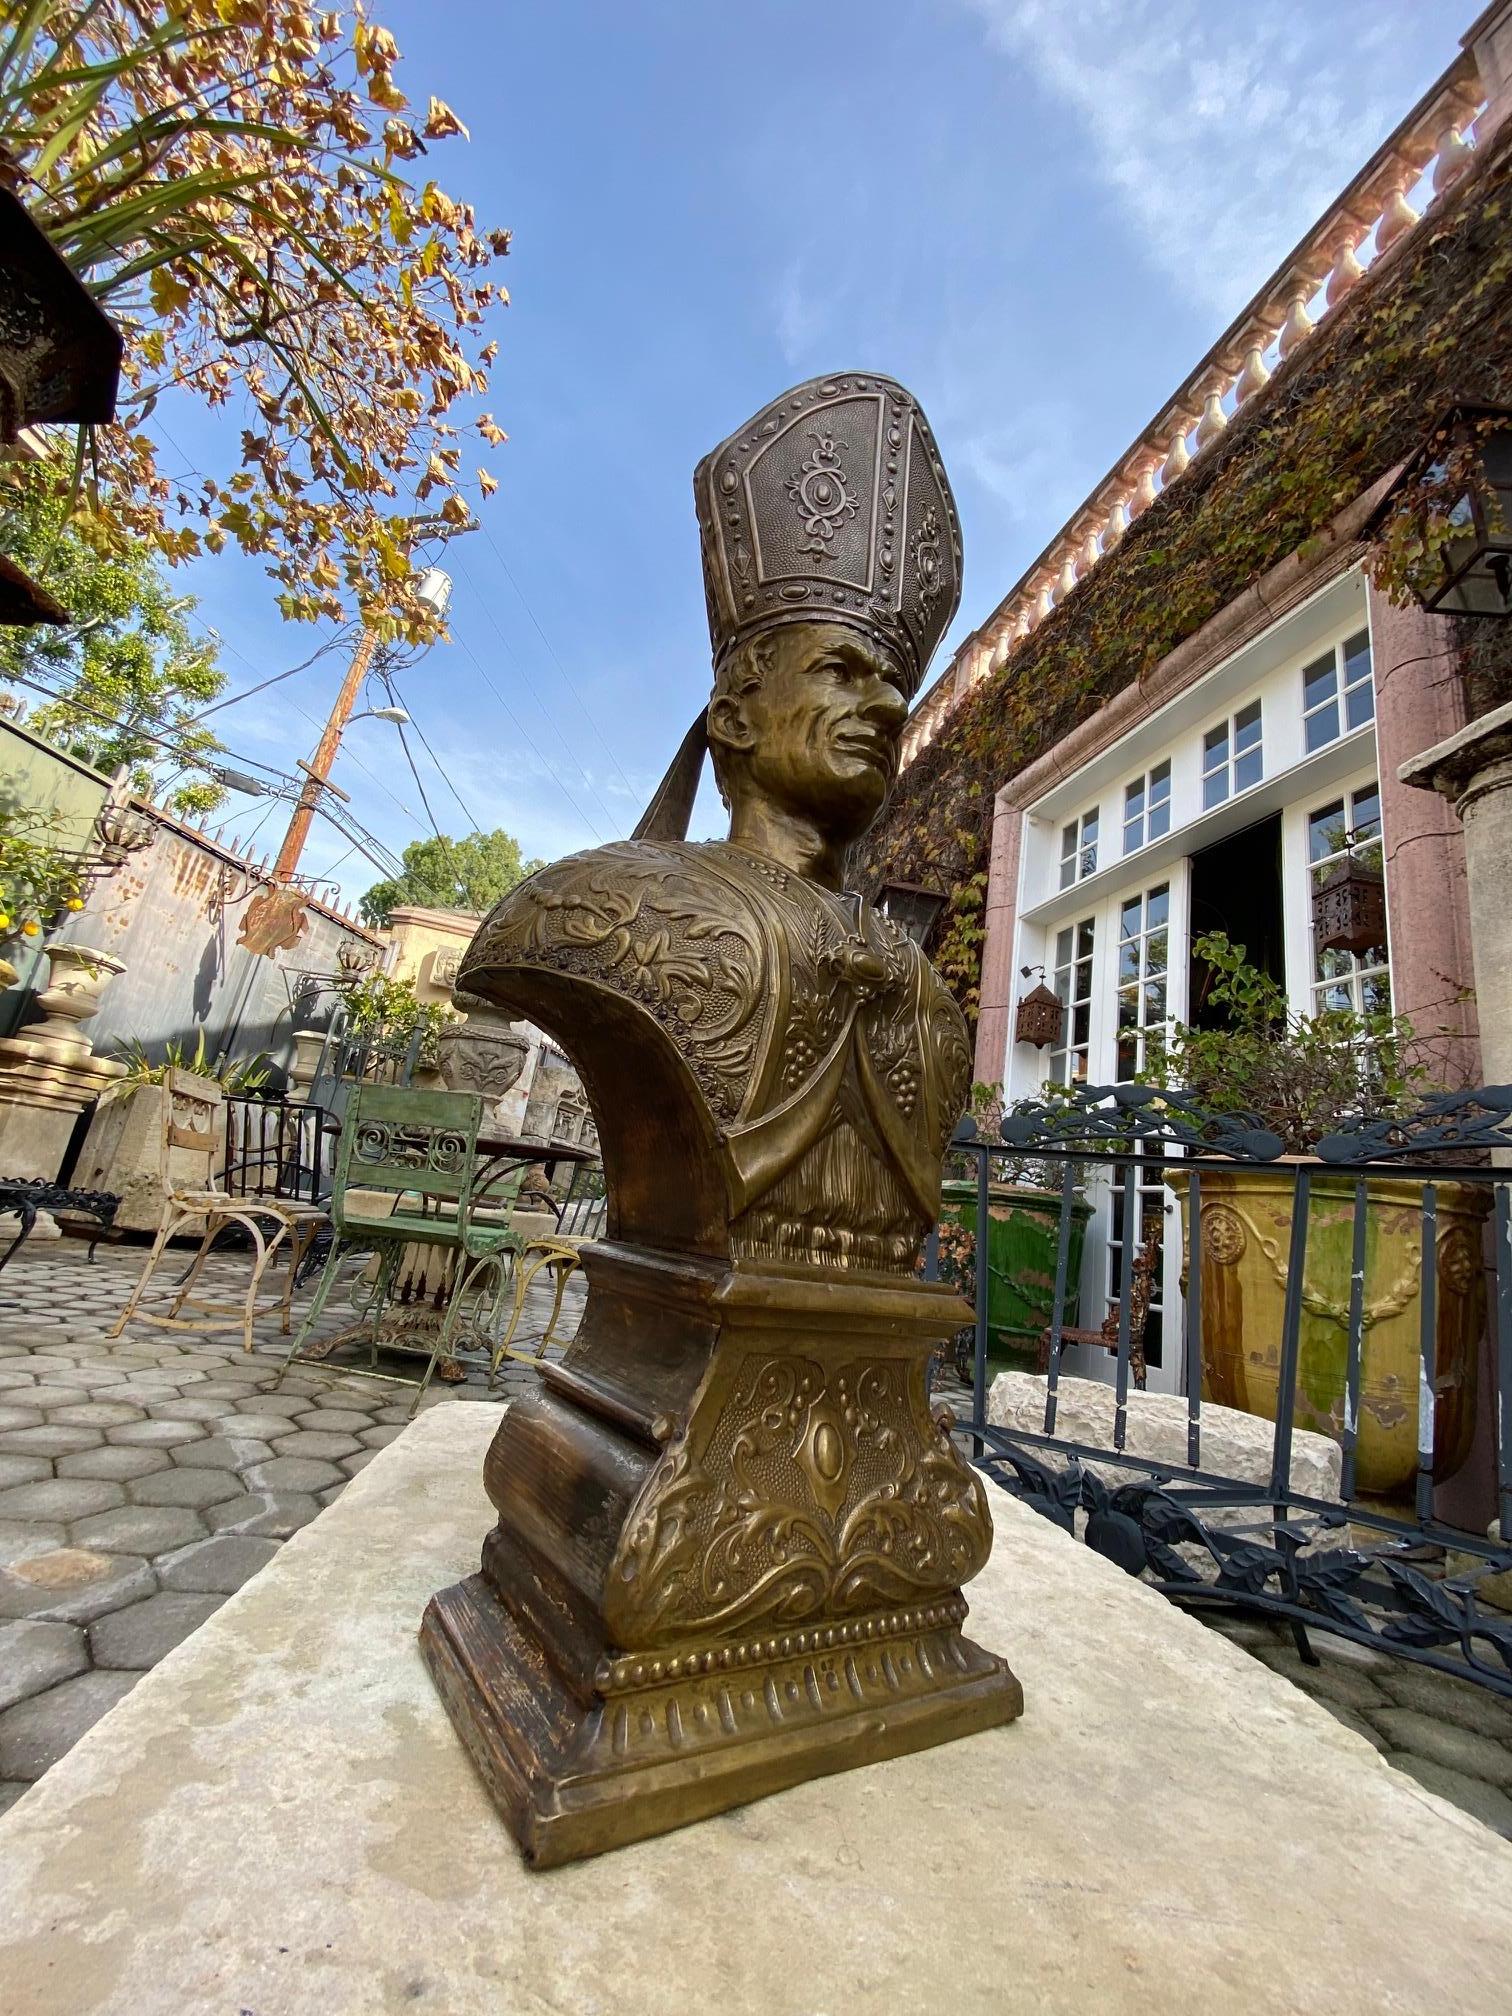 Un étonnant buste du 19ème siècle représentant le Pape de Rome Léon XIII composé de métal doré repoussé (une technique dans laquelle le métal est battu sur une base sculptée en bois à la main. Cette pièce d'art buste ont une patine magnifique et